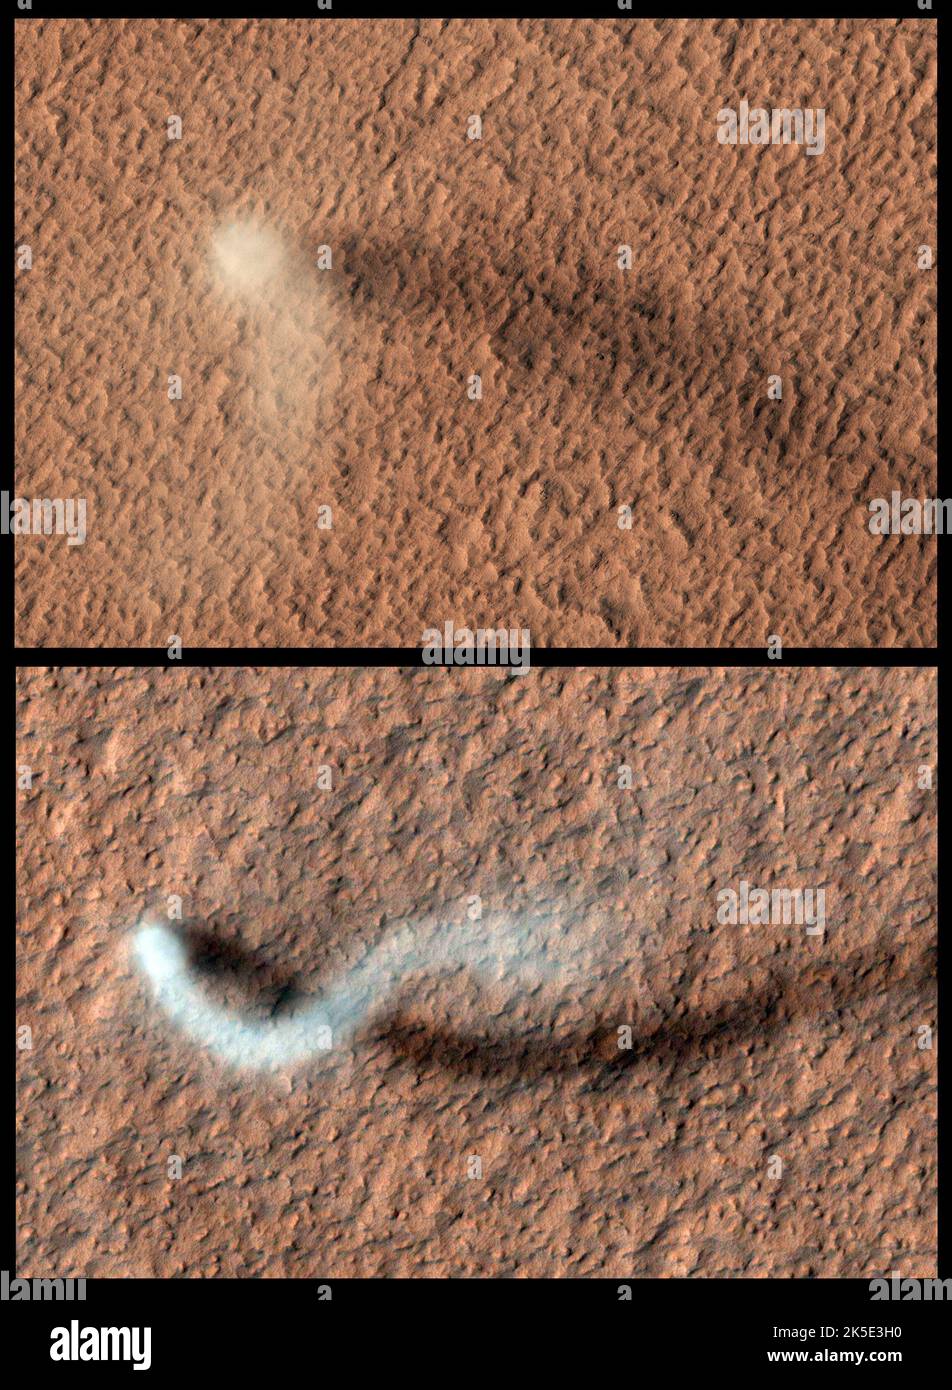 La polvere devia su Marte. I diavoli di polvere sono colonne rotanti di polvere che si formano intorno alle sacche d'aria a bassa pressione, e sono comuni sia sulla Terra che su Marte. Questi diavoli di polvere si sono formati sulle pianure vulcaniche ricoperte di polvere di Amazonis Planitia. Il diavolo della polvere (parte superiore) ha un nucleo approssimativamente 50m attraverso. La lunghezza dell'ombra suggerisce il pennacchio di sale circa 650m nell'atmosfera. Il diavolo della polvere (immagine inferiore) ha una forma a serpentina, e la sua ombra indica che il pennacchio raggiunge più di 800m metri, o mezzo miglio di altezza. Una versione ottimizzata e migliorata delle immagini NASA. Credit: ASA/JPL/UArizona Foto Stock